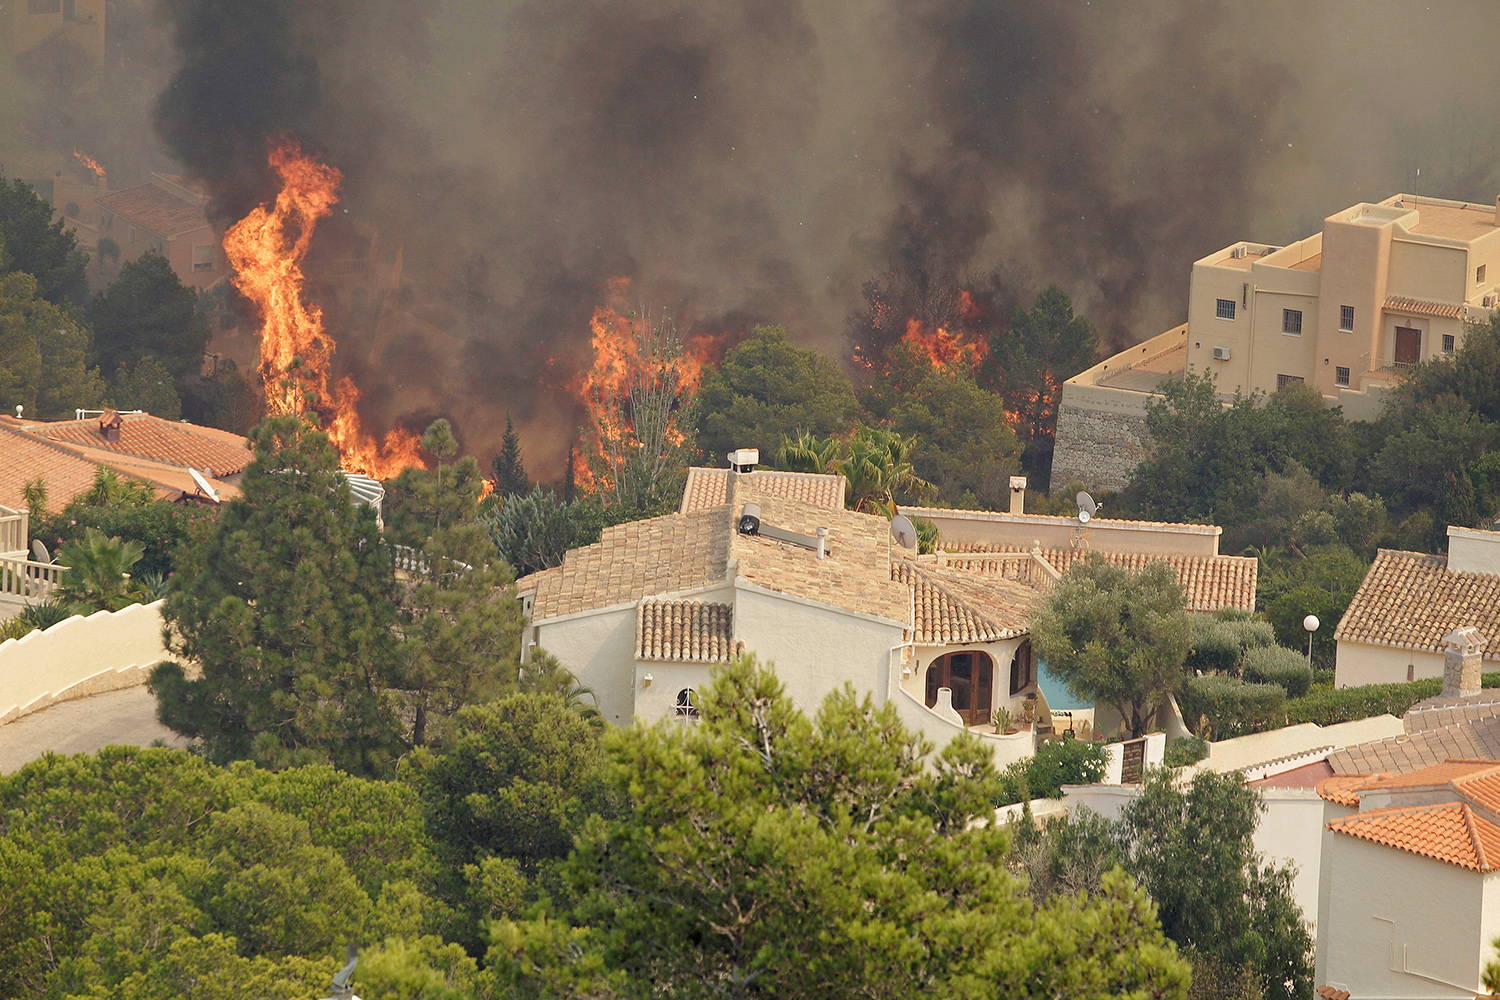 Incendios sin control arrasan varias localidades de la provincia de Alicante